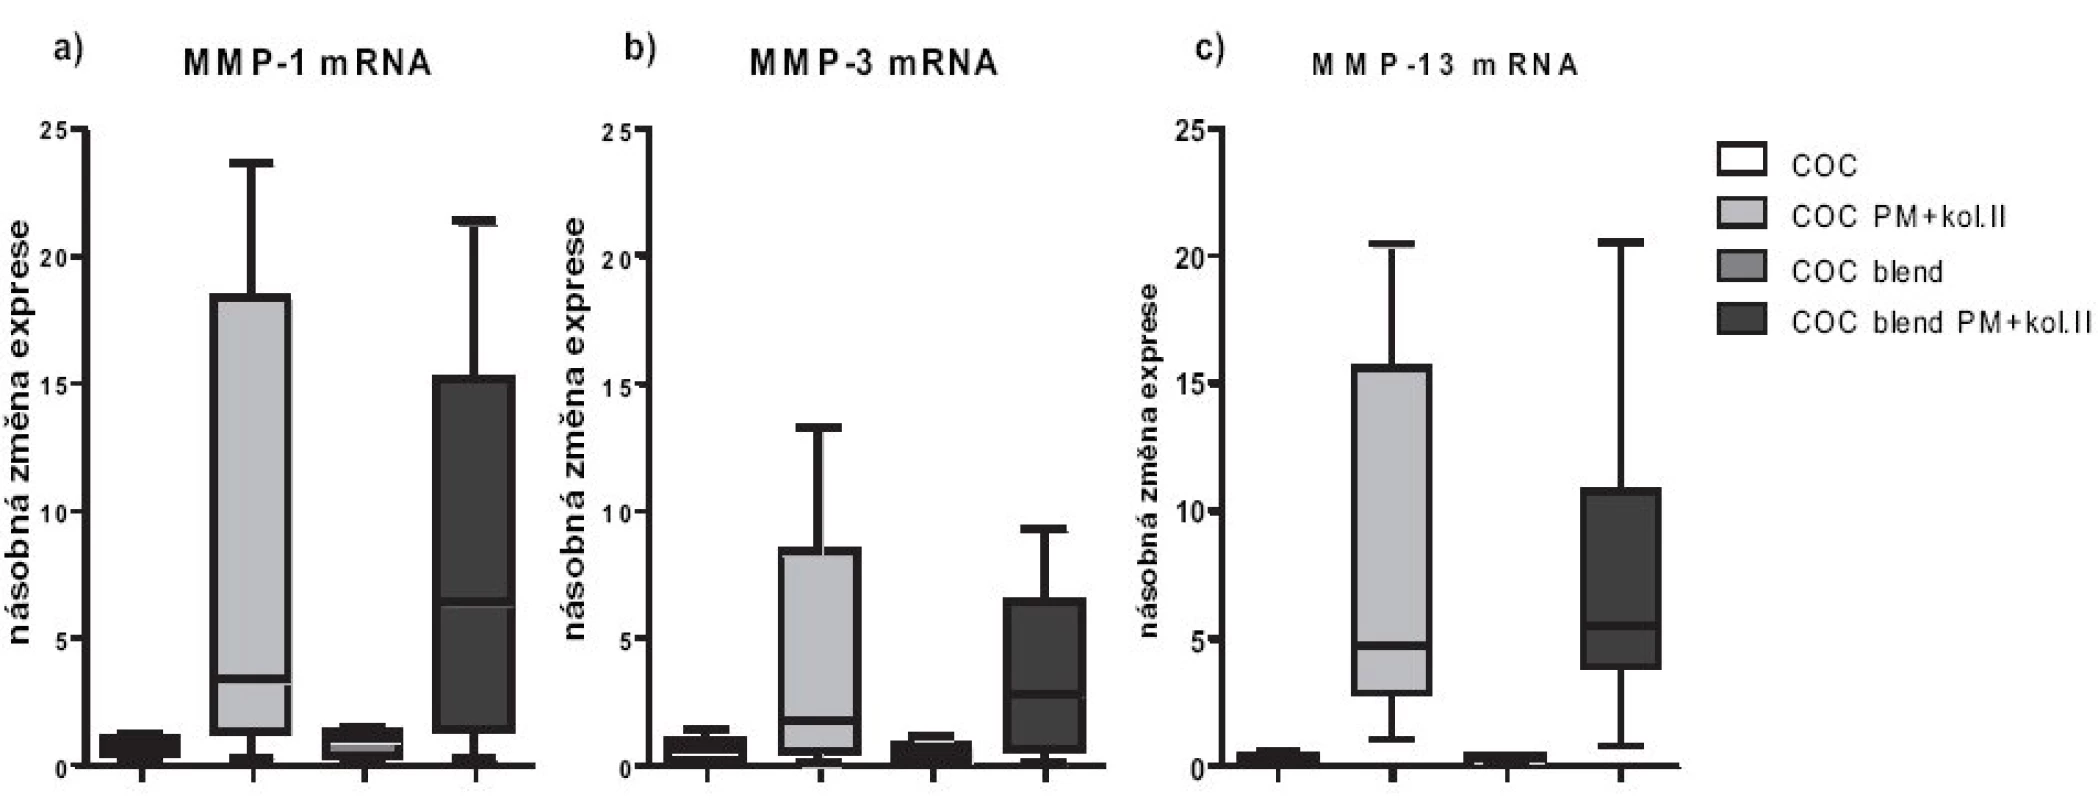 Relativní genové exprese na úrovni mRNA pro MMP-1, MMP-3 a MMP-13. Exprese jsou vztaženy relativně k negativní kontrole (chondrocyty pěstované v jamce s médiem bez přítomnosti materiálu), která byla stanovena jako K=1.